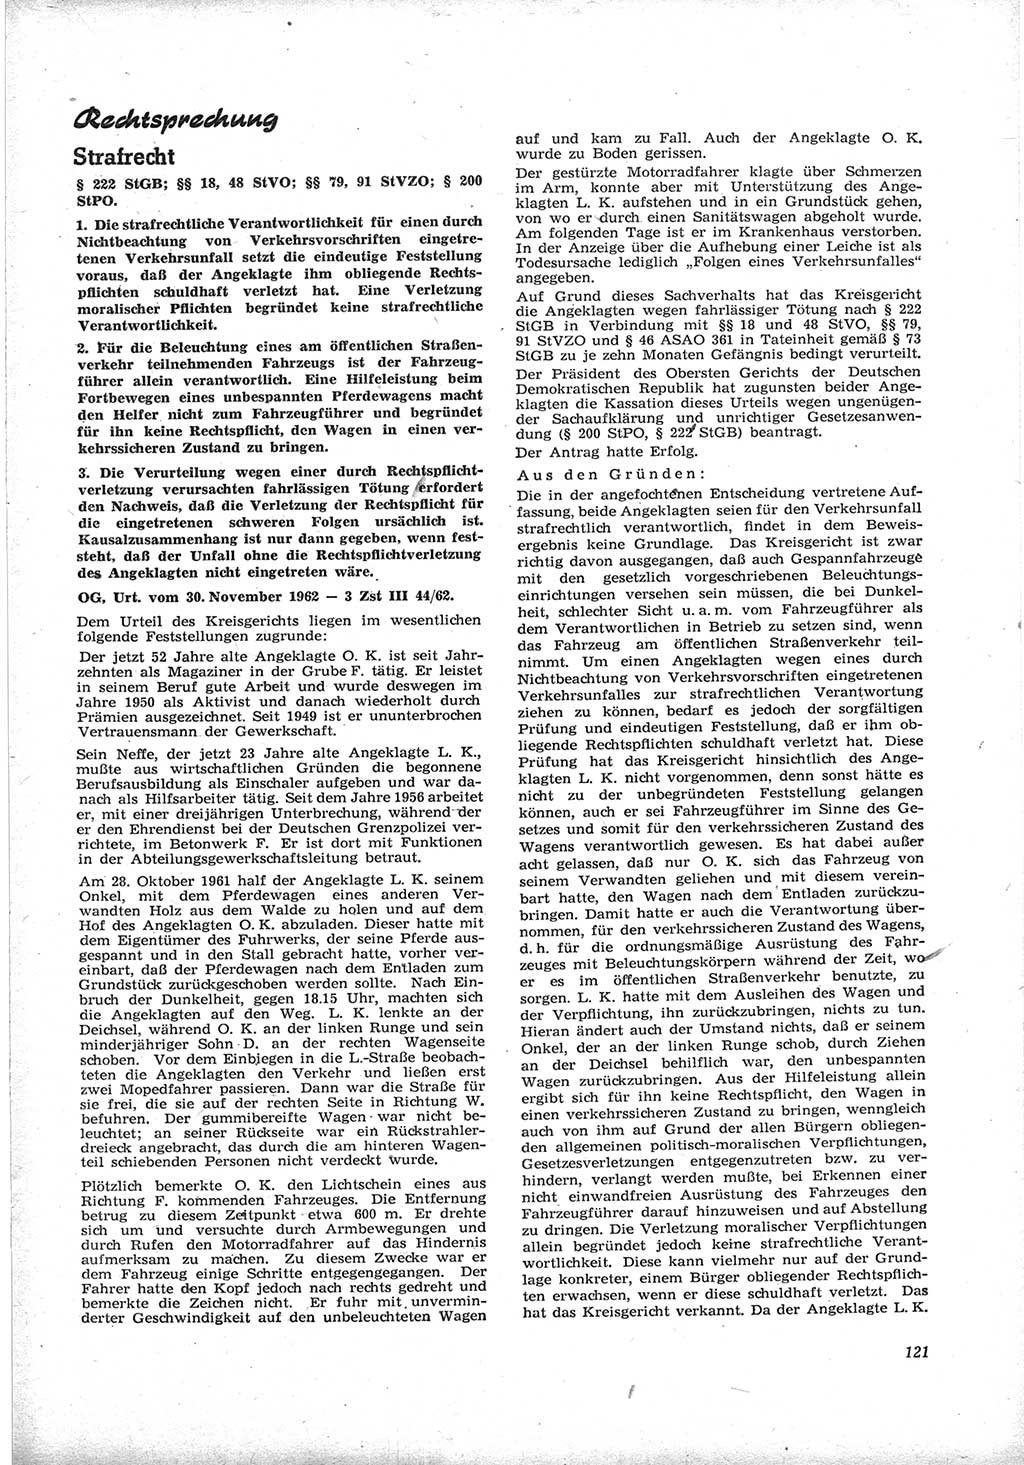 Neue Justiz (NJ), Zeitschrift für Recht und Rechtswissenschaft [Deutsche Demokratische Republik (DDR)], 17. Jahrgang 1963, Seite 121 (NJ DDR 1963, S. 121)